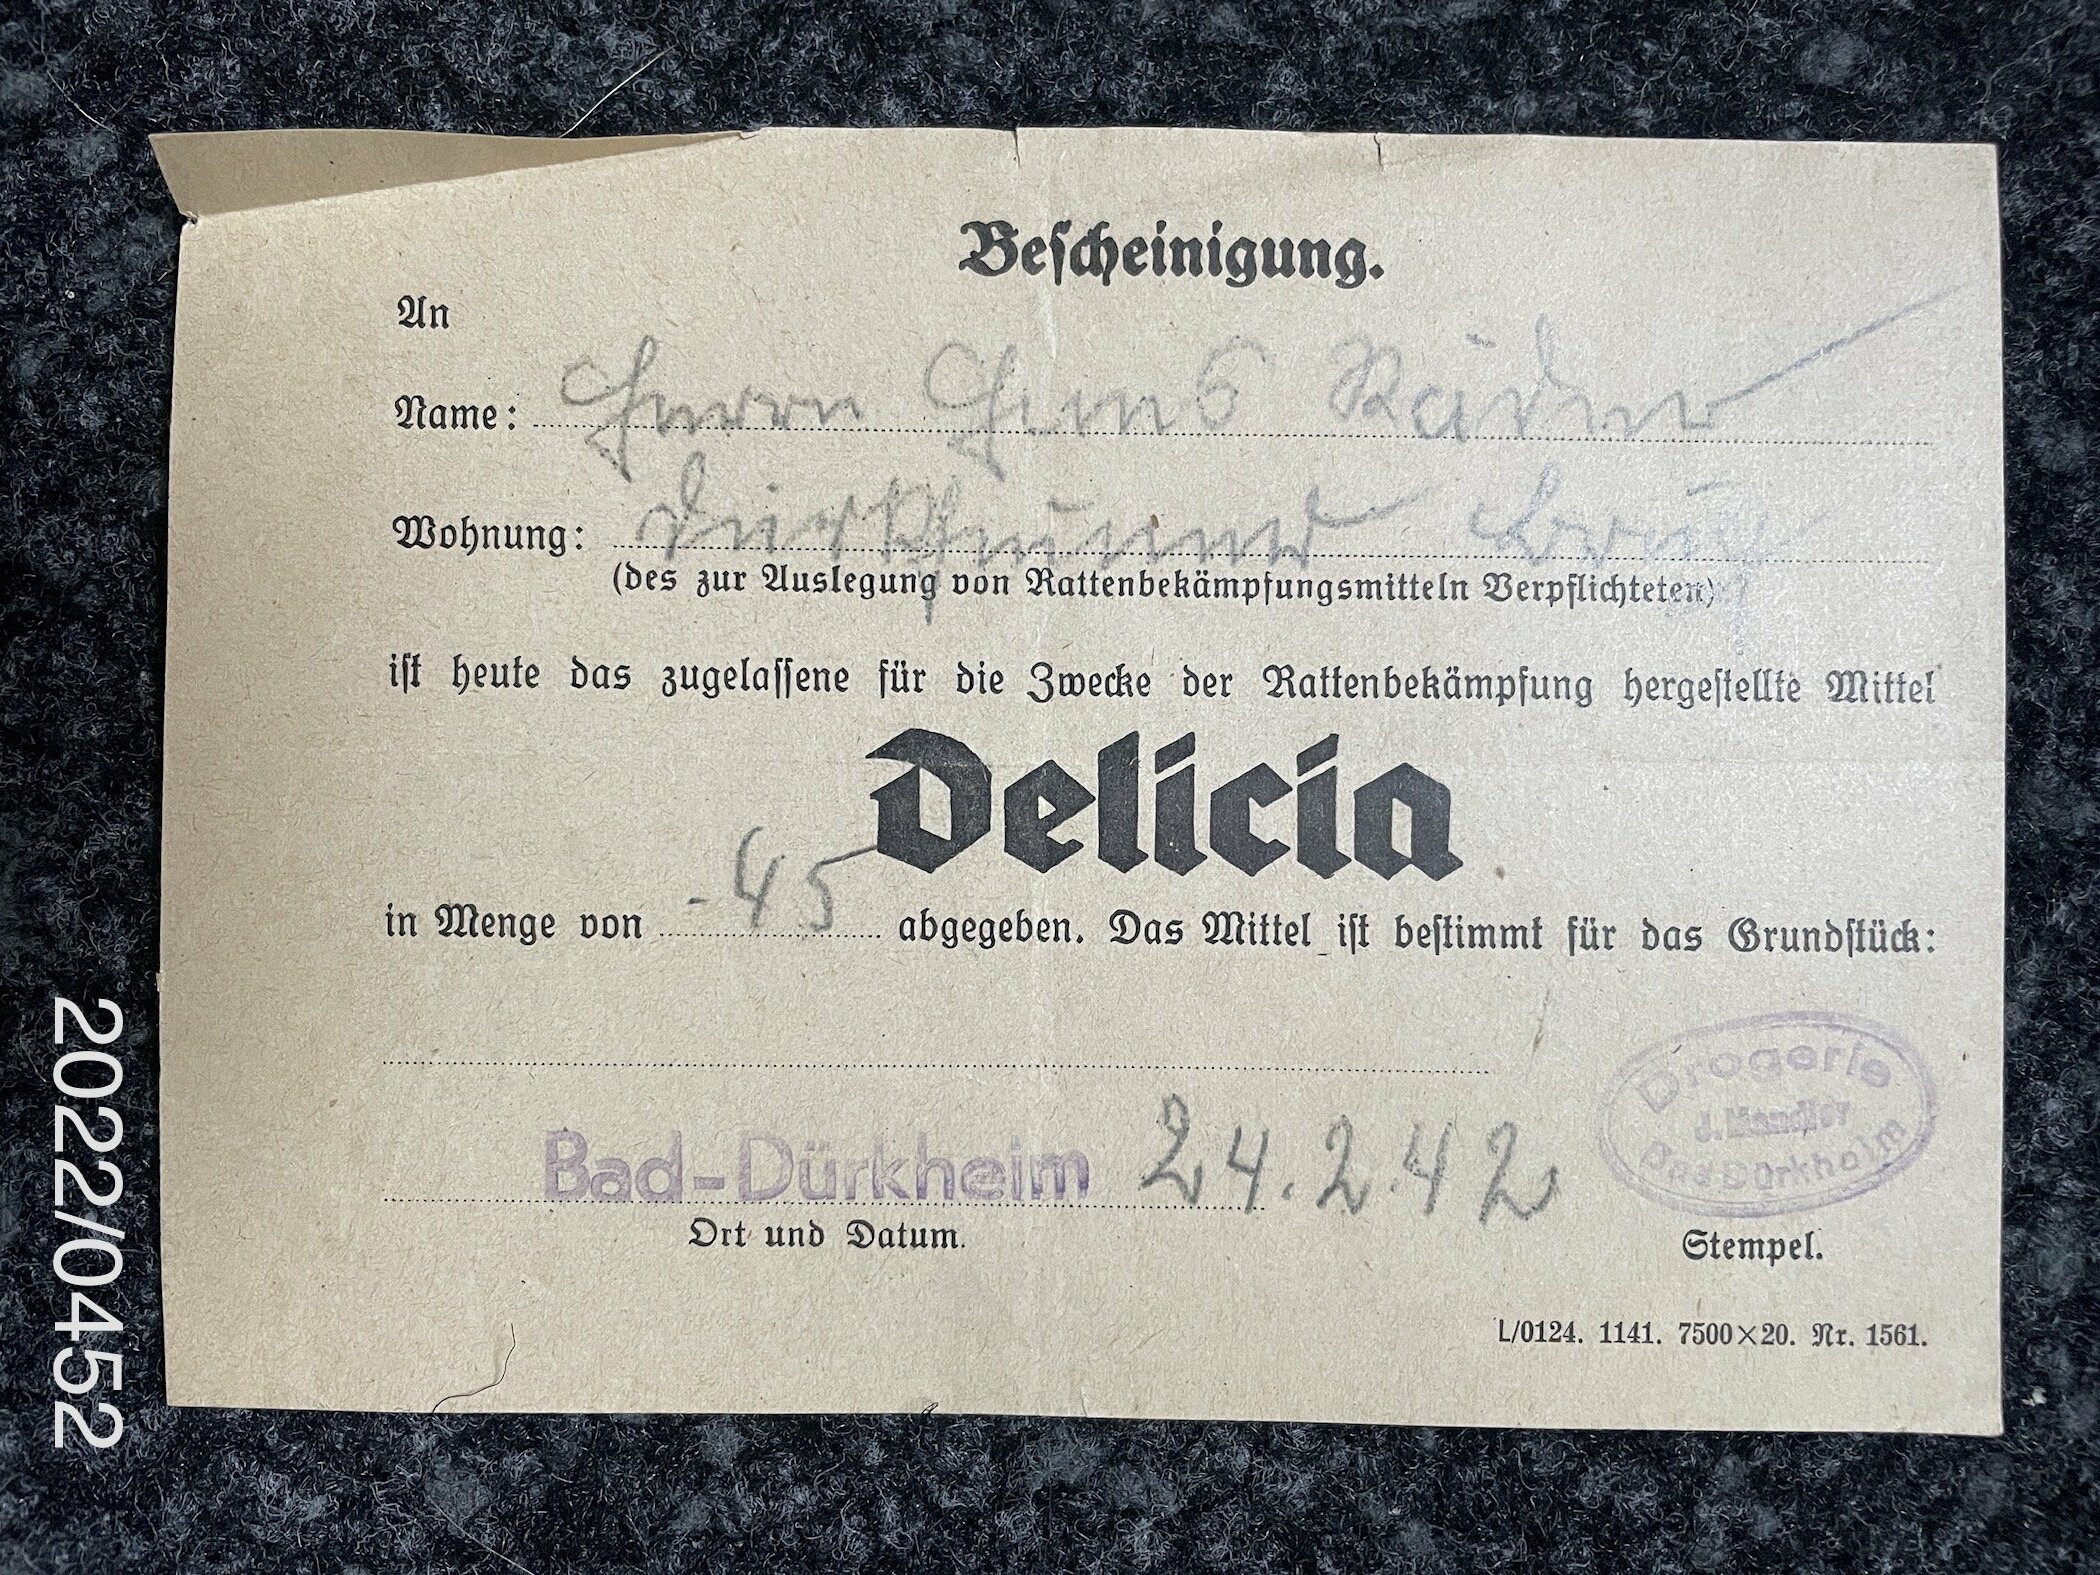 Bescheinigung zur Abgabe von Delicia 1942 (Stadtmuseum Bad Dürkheim im Kulturzentrum Haus Catoir CC BY-NC-SA)